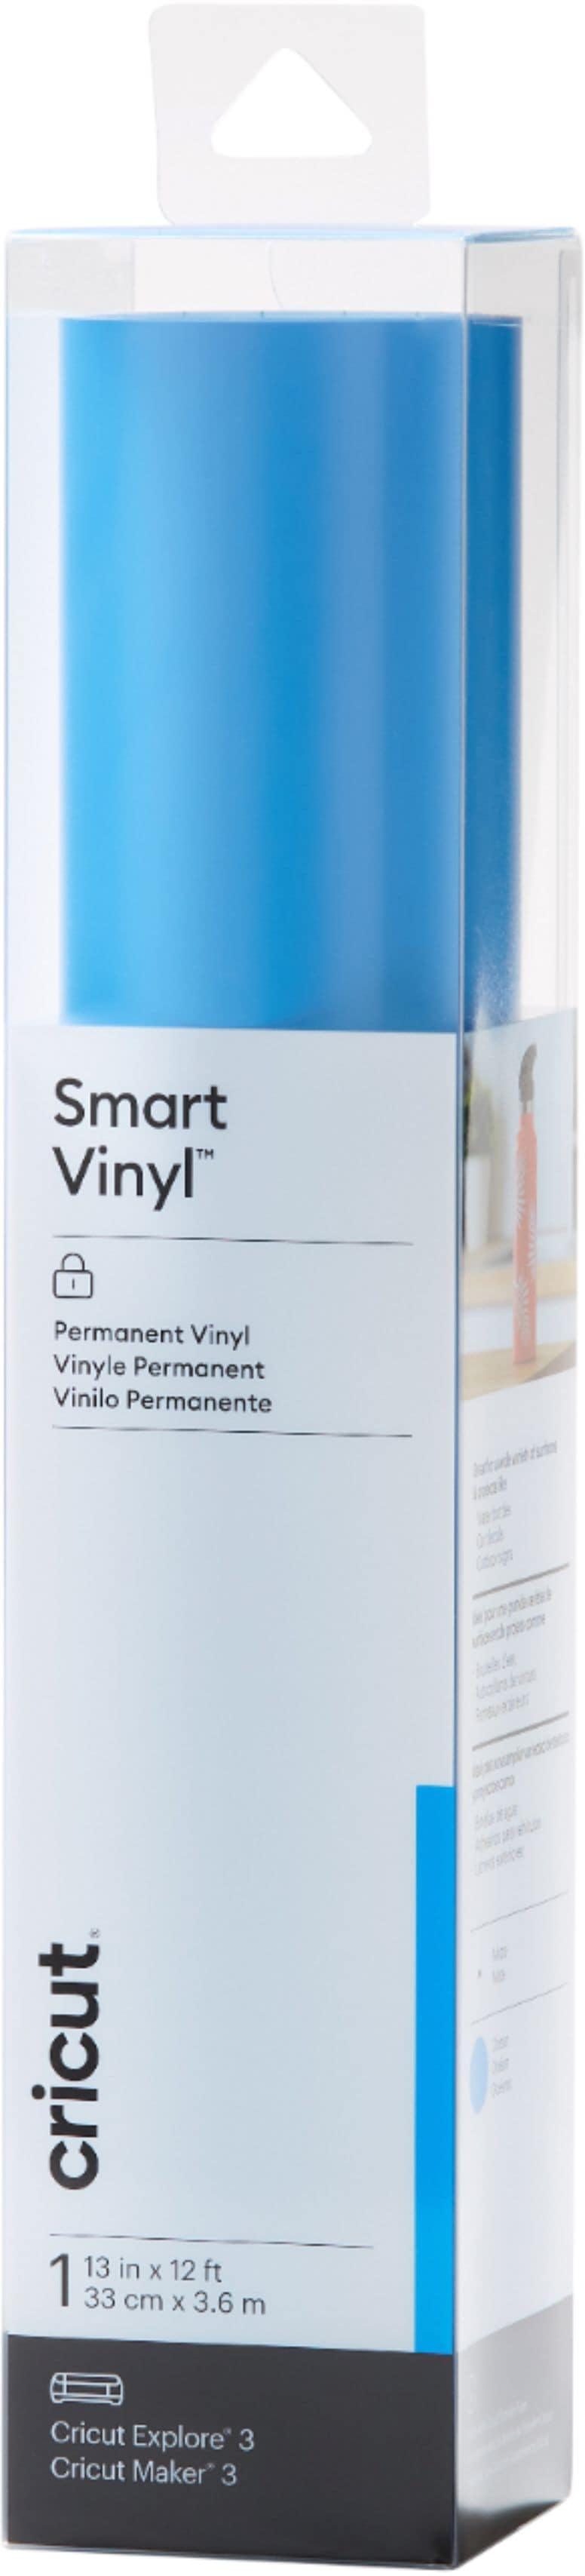 Cricut - Smart Vinyl – Permanent 12 ft - Ocean_0